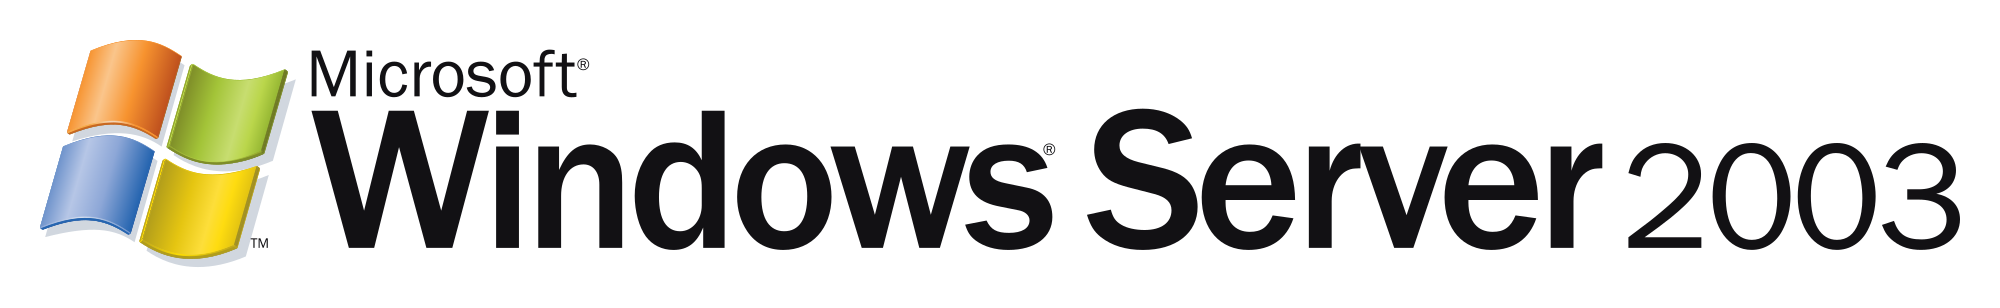 logo windows server 2003